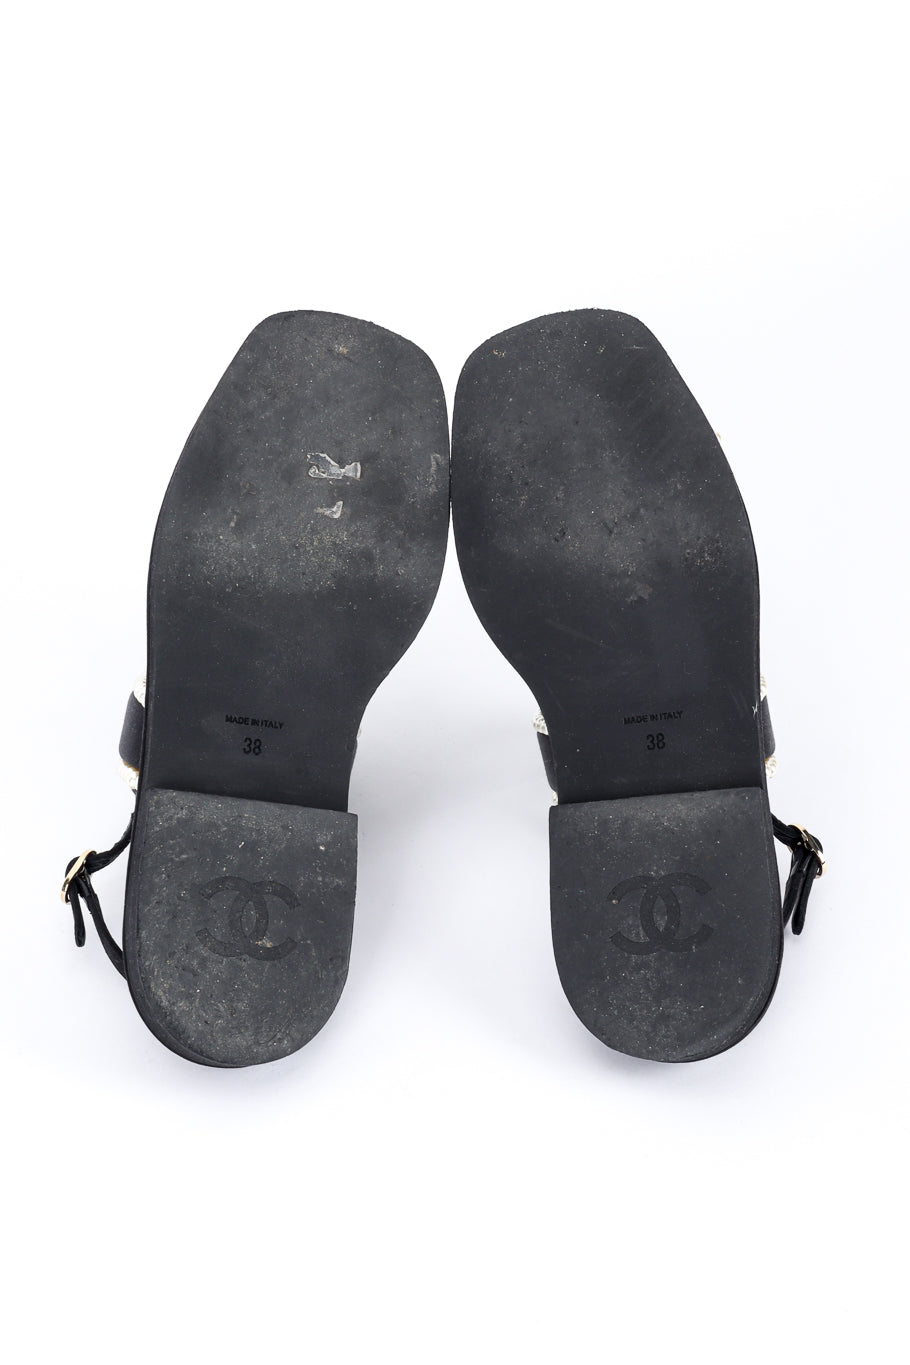 Chanel CC Satin & Pearl Sandals outsole @recess la